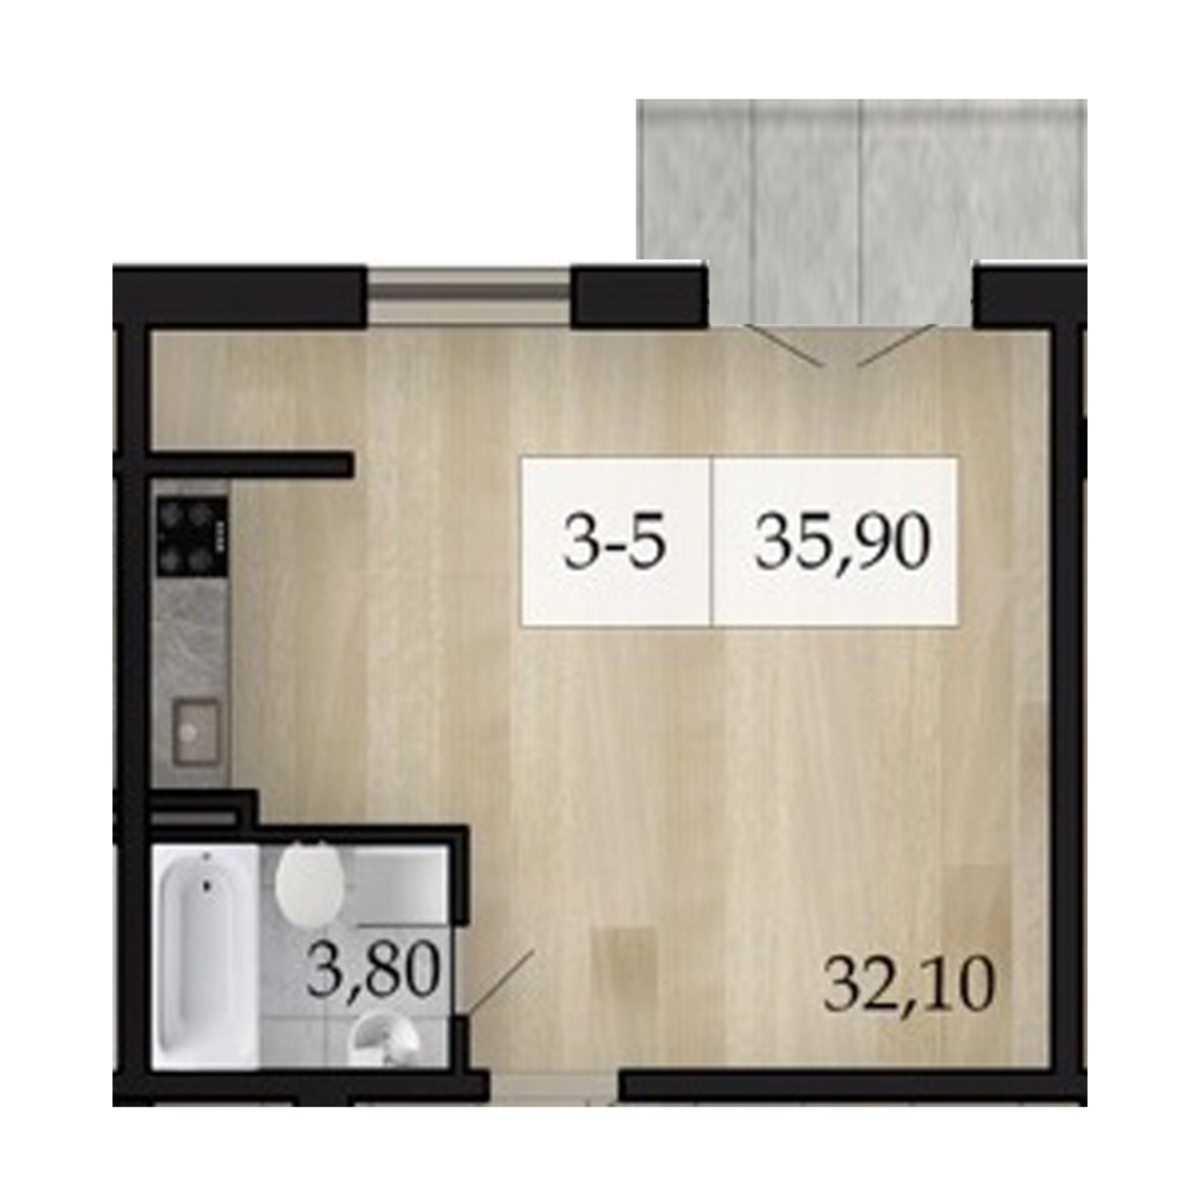 1-комнатная квартира в новом доме на Маршала Малиновского